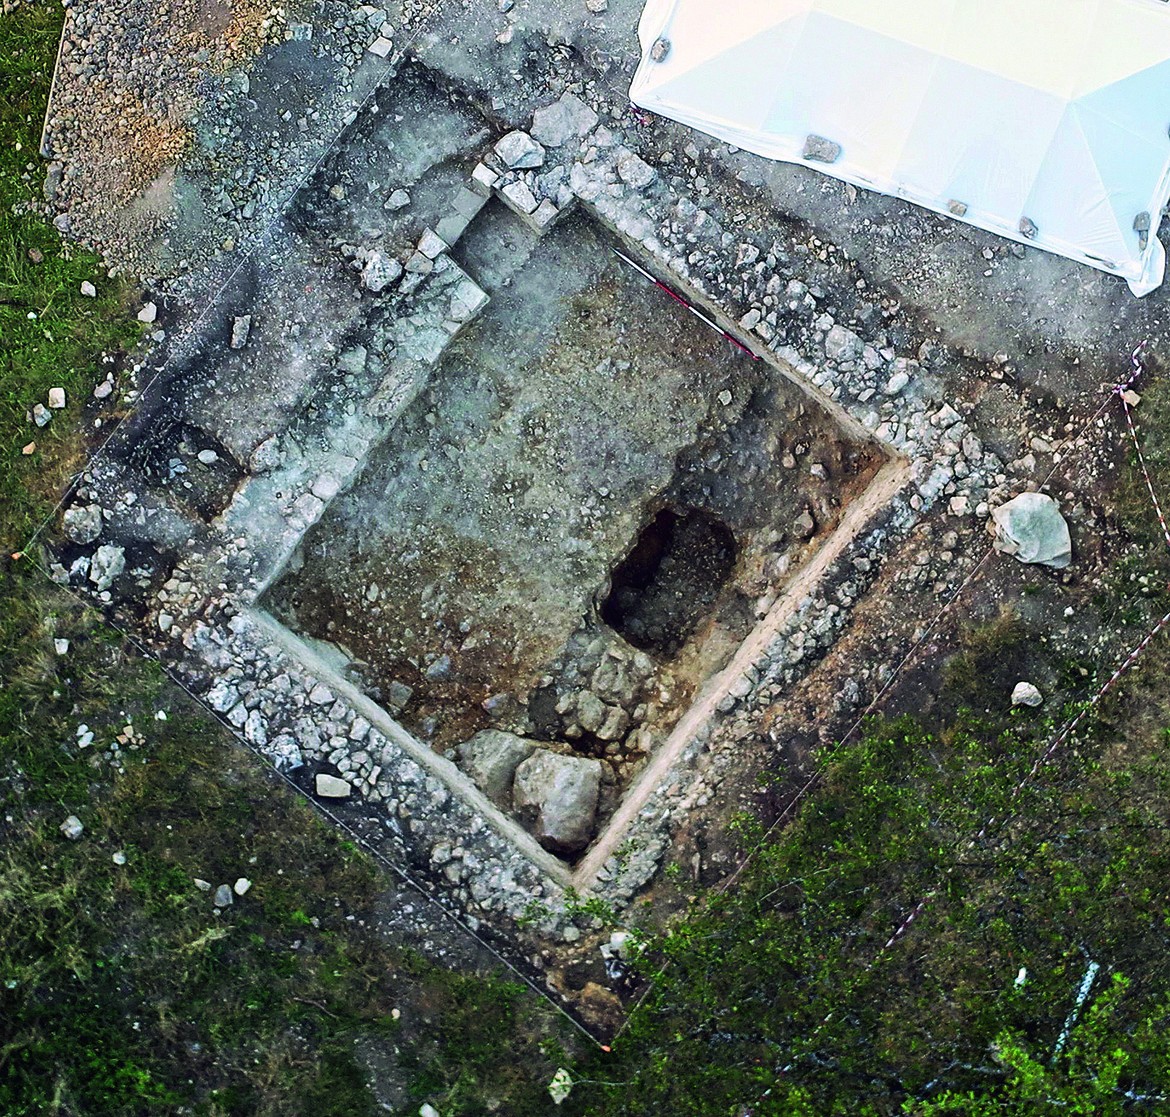 Une cave carolingienne semi-enterrée a été découverte près de la chapelle St-Gilles. Datant entre la fin du VIIe et la fin du IXe siècle, elle faisait probablement partie d’une grange dédiée aux dîmes ecclésiastiques.